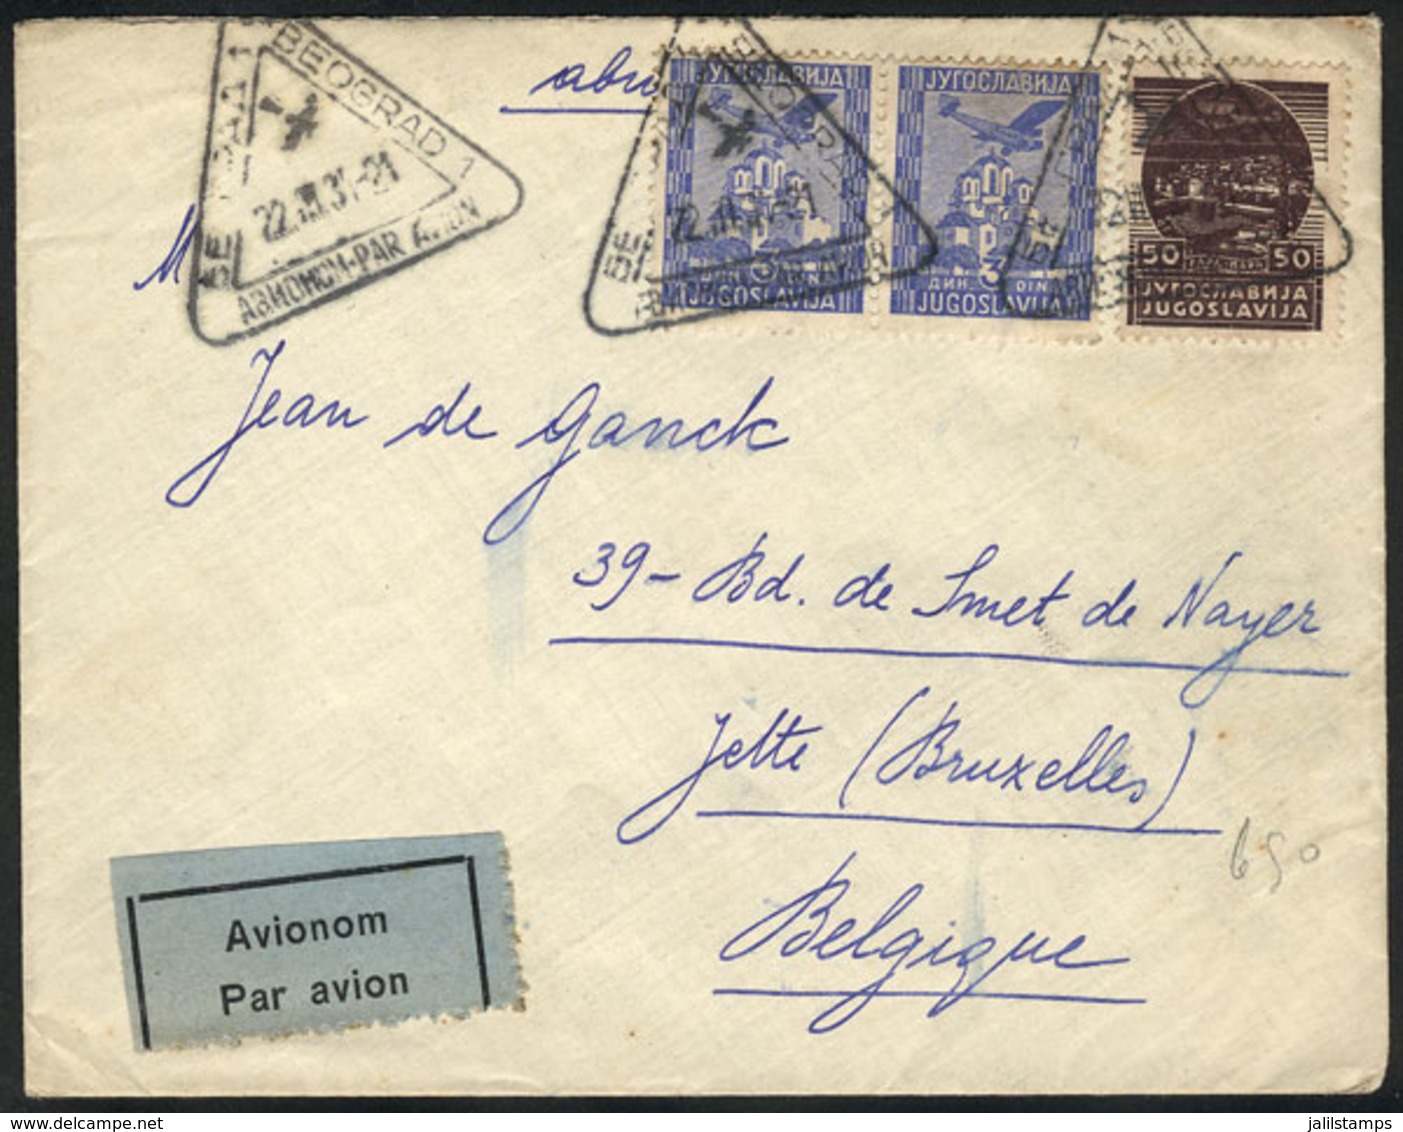 YUGOSLAVIA: 22/AU/1934 BEOGRAD - ZEMUN: Airmail Cover To Belgium, Very Fine Quality! - Cartas & Documentos